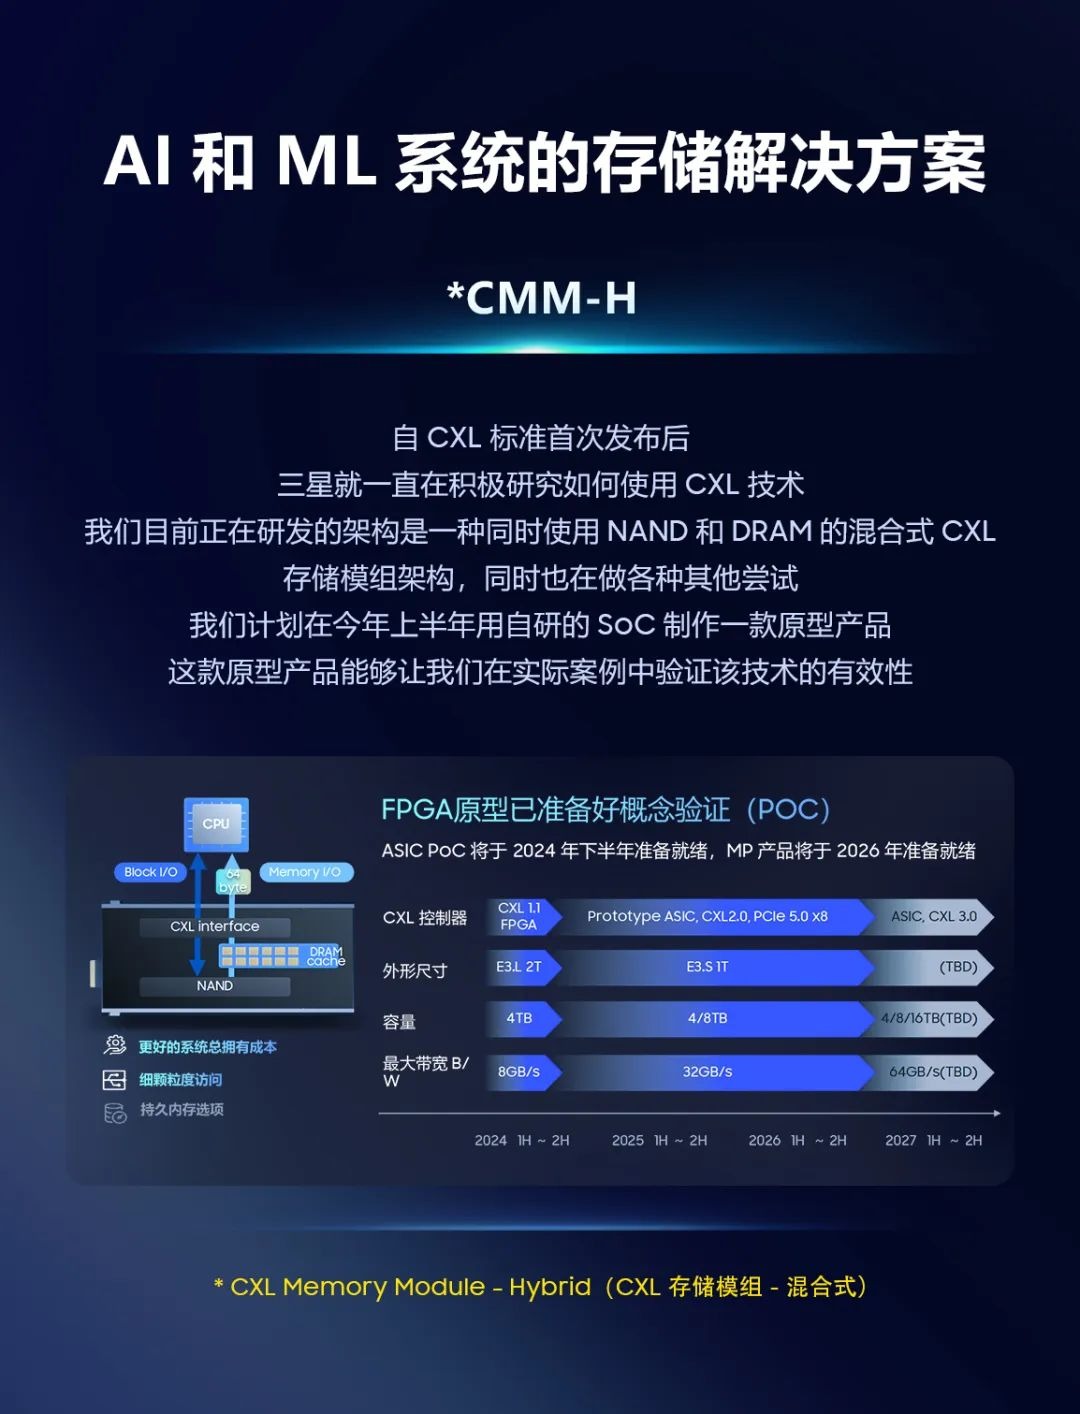 三星正研发 CMM-H 混合存储模组：通过 CXL 技术同时连接 DRAM 内存和 NAND 闪存